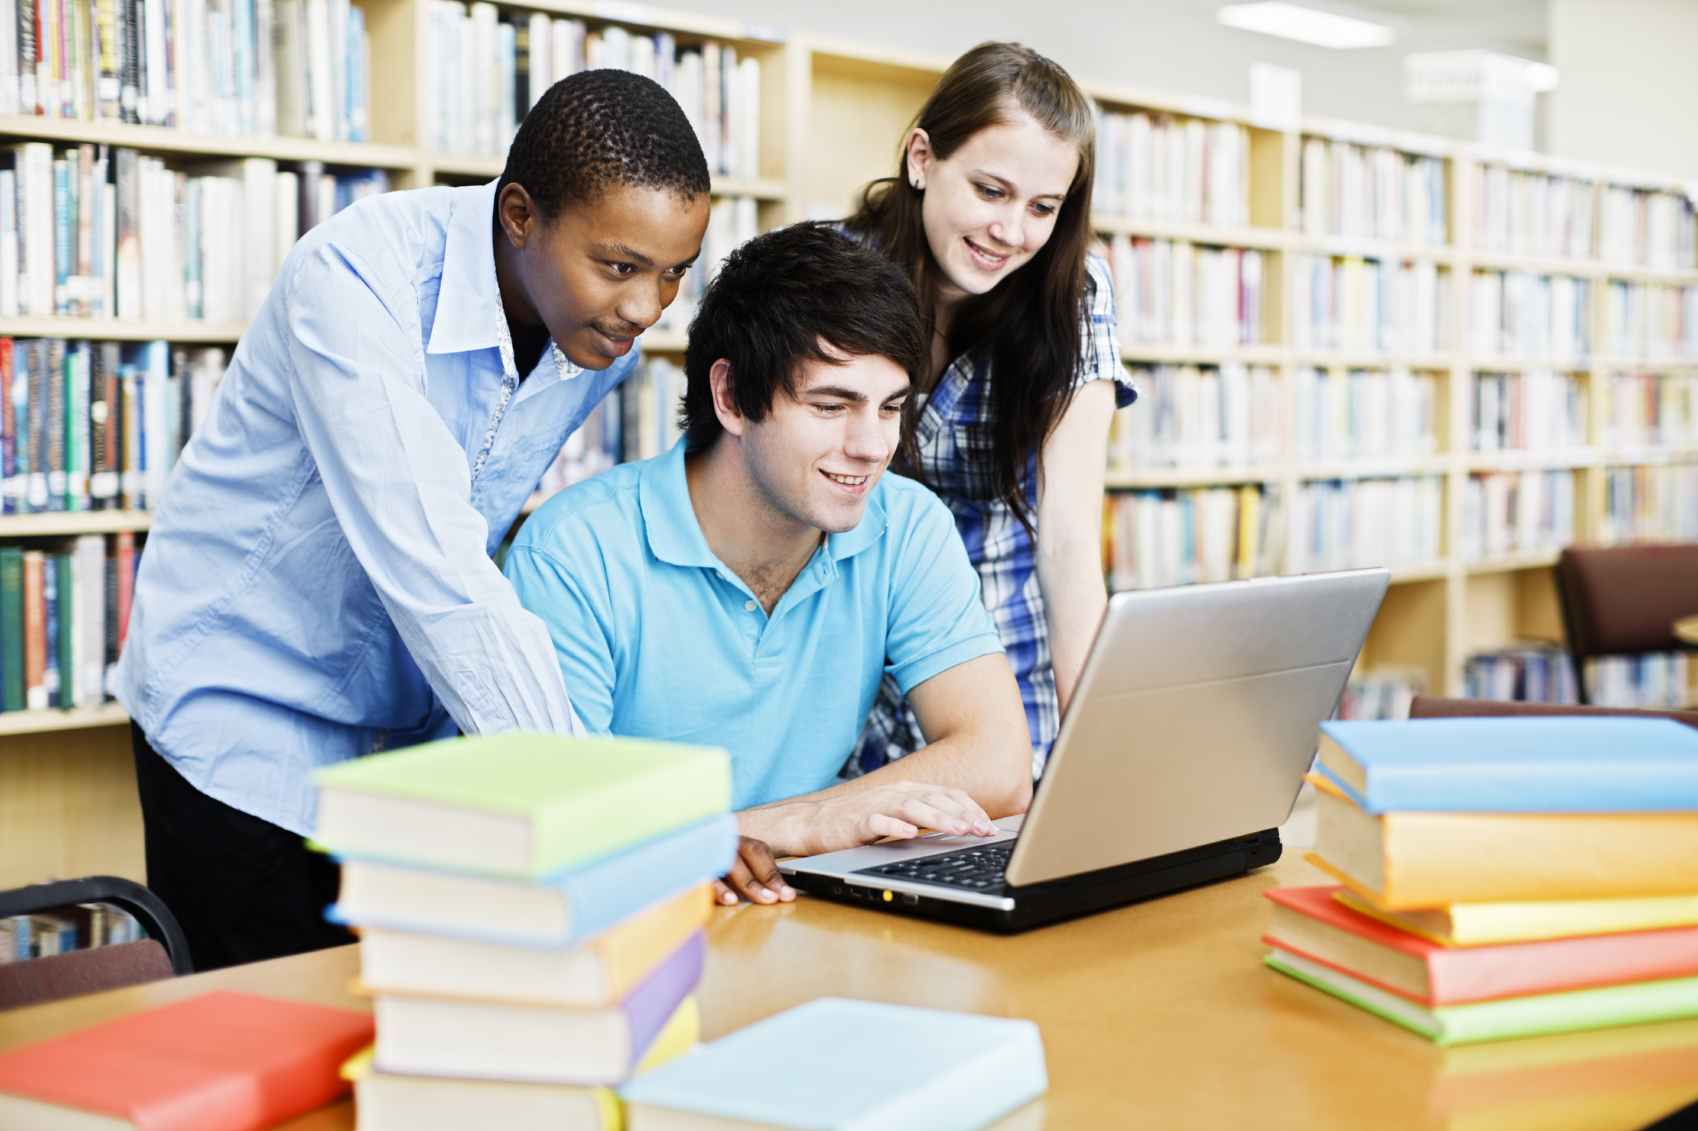 Место получения знаний. Студенты в библиотеке. Учащиеся студенты. Ученики в библиотеке. Студенты за компьютером в библиотеке.